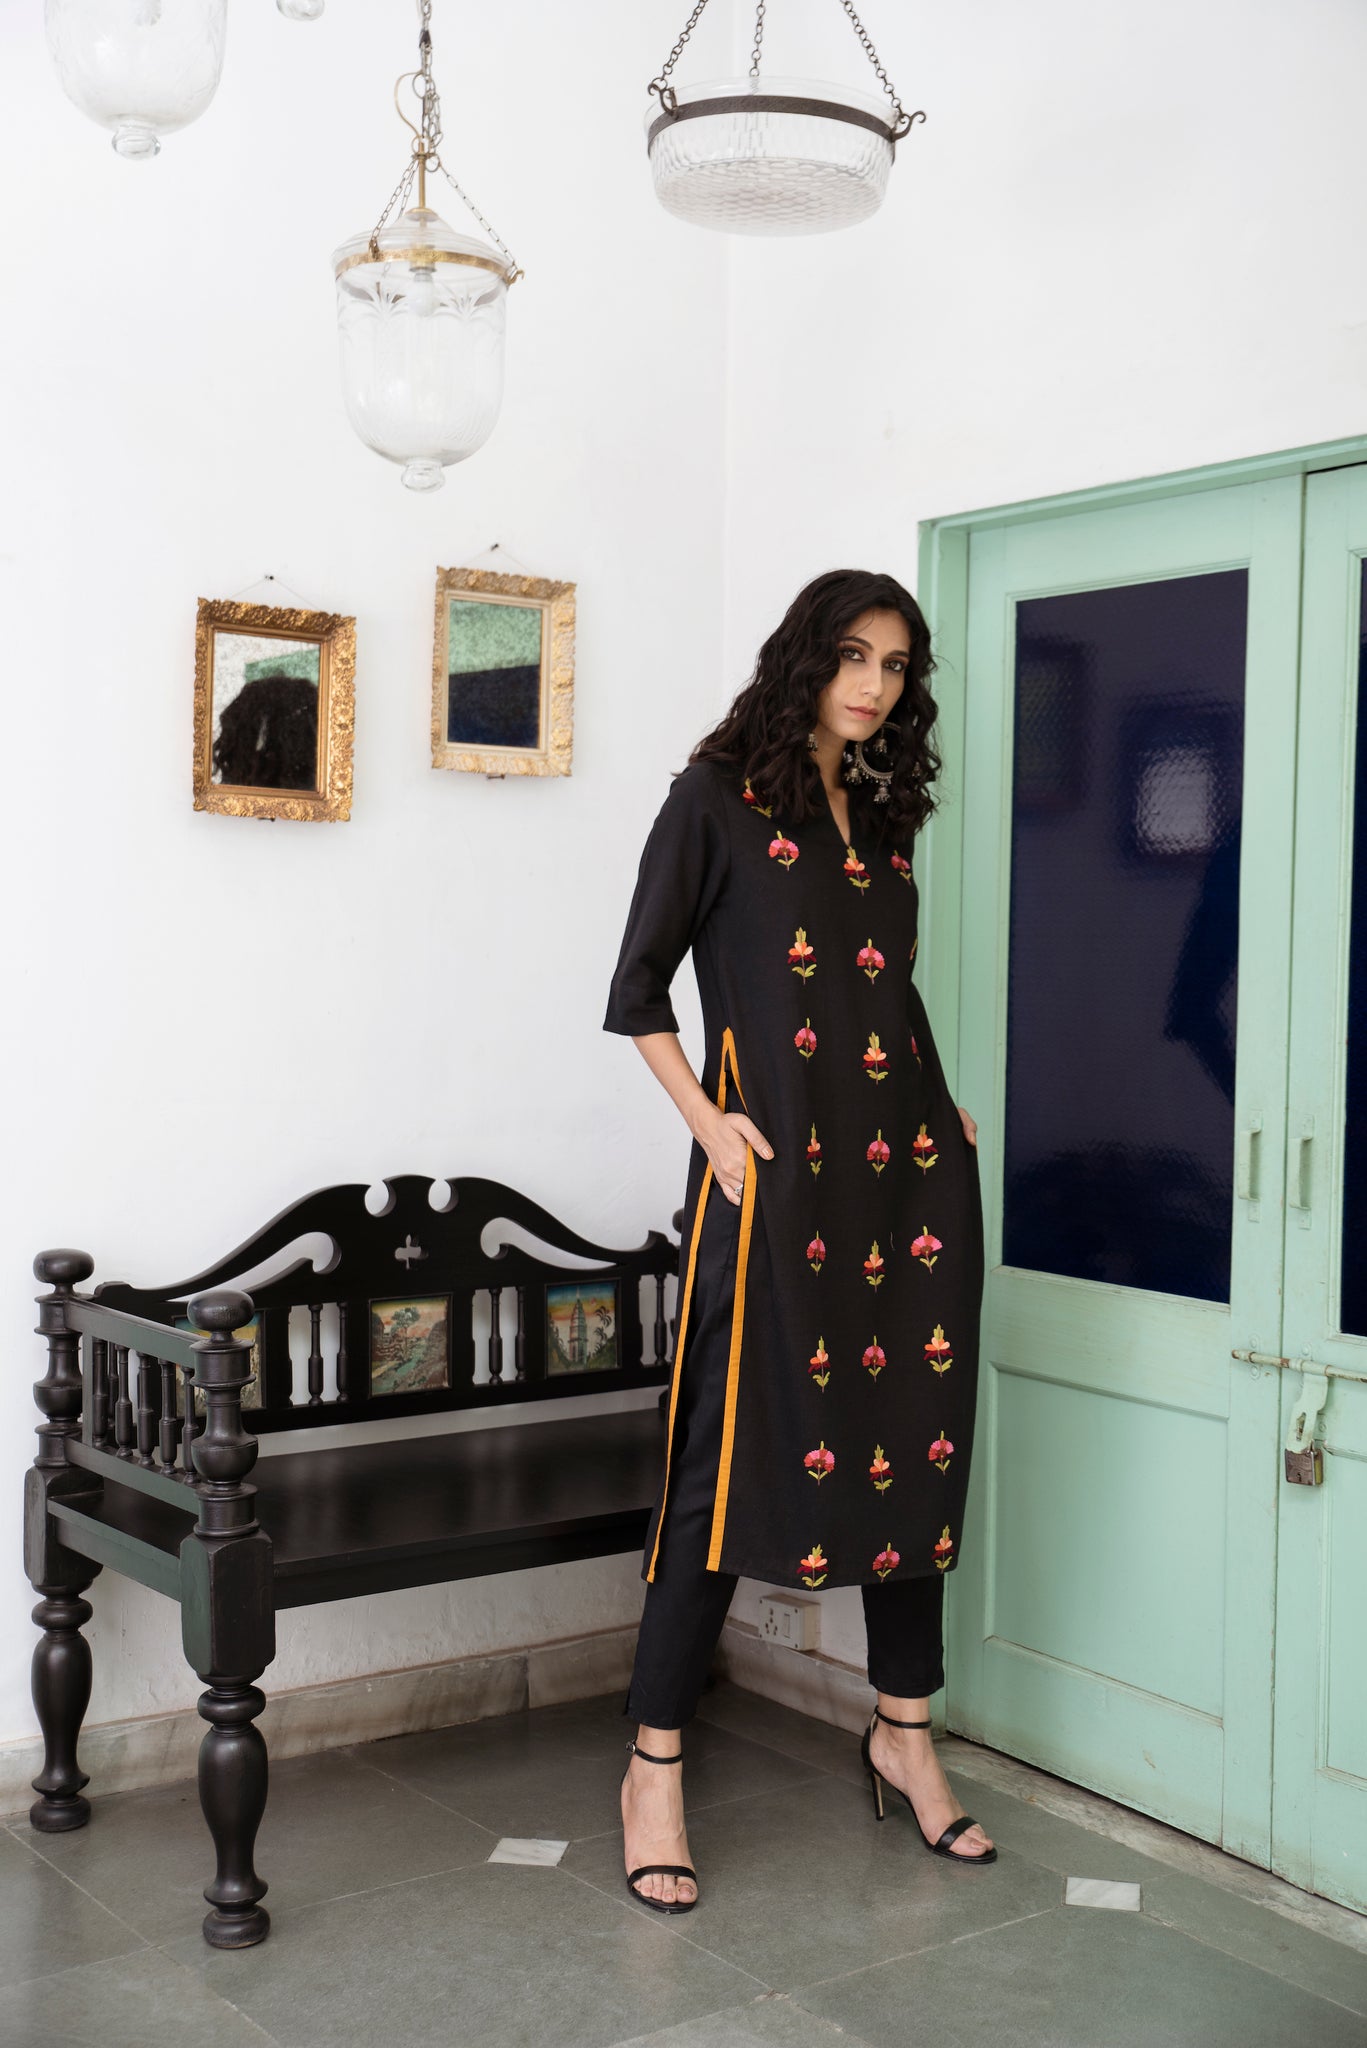 Black Kashmiri Embroidered Woven Long Kurta